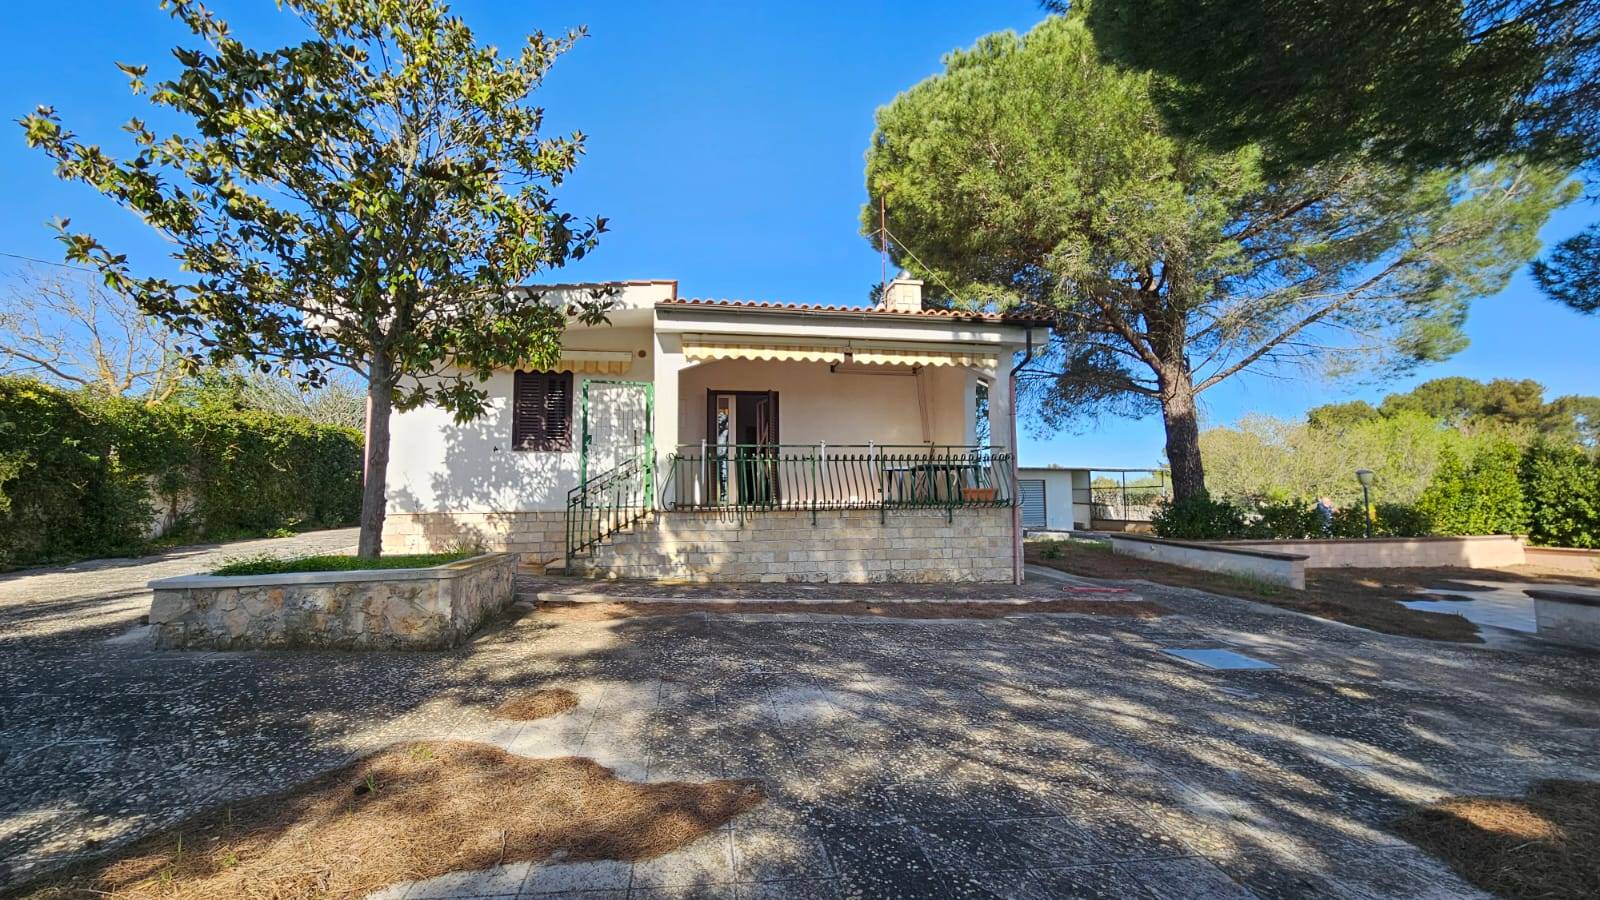 Villa in vendita a Martina Franca, 5 locali, prezzo € 130.000 | PortaleAgenzieImmobiliari.it